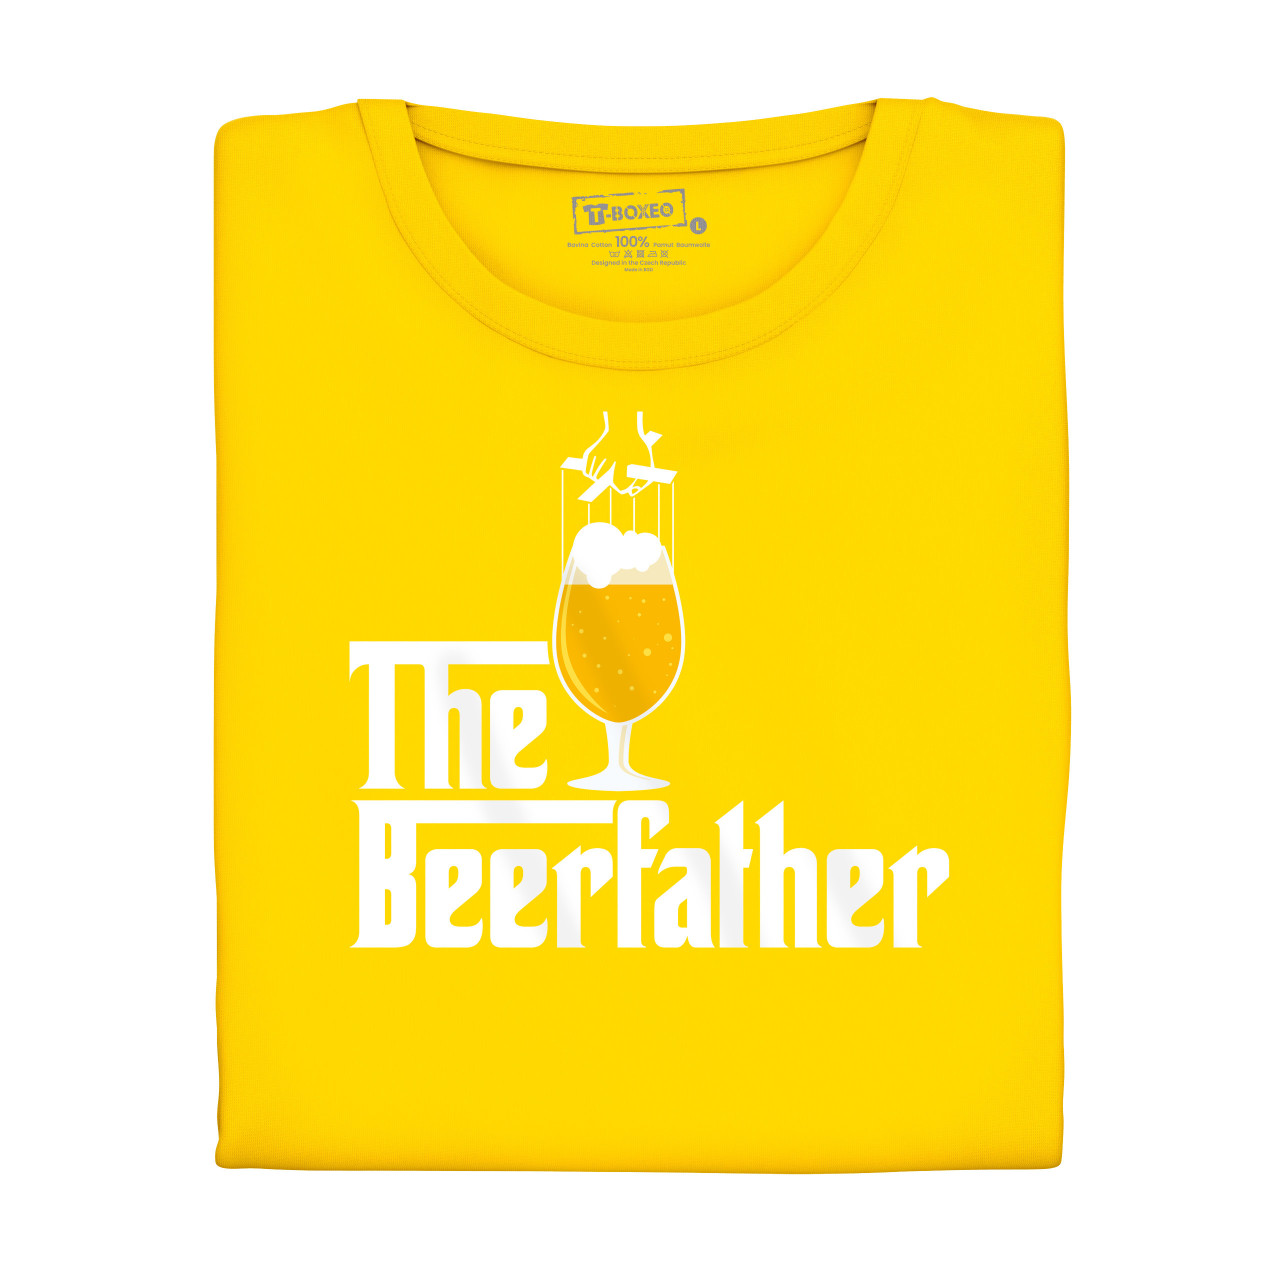 Pivní tričko - The Beerfather